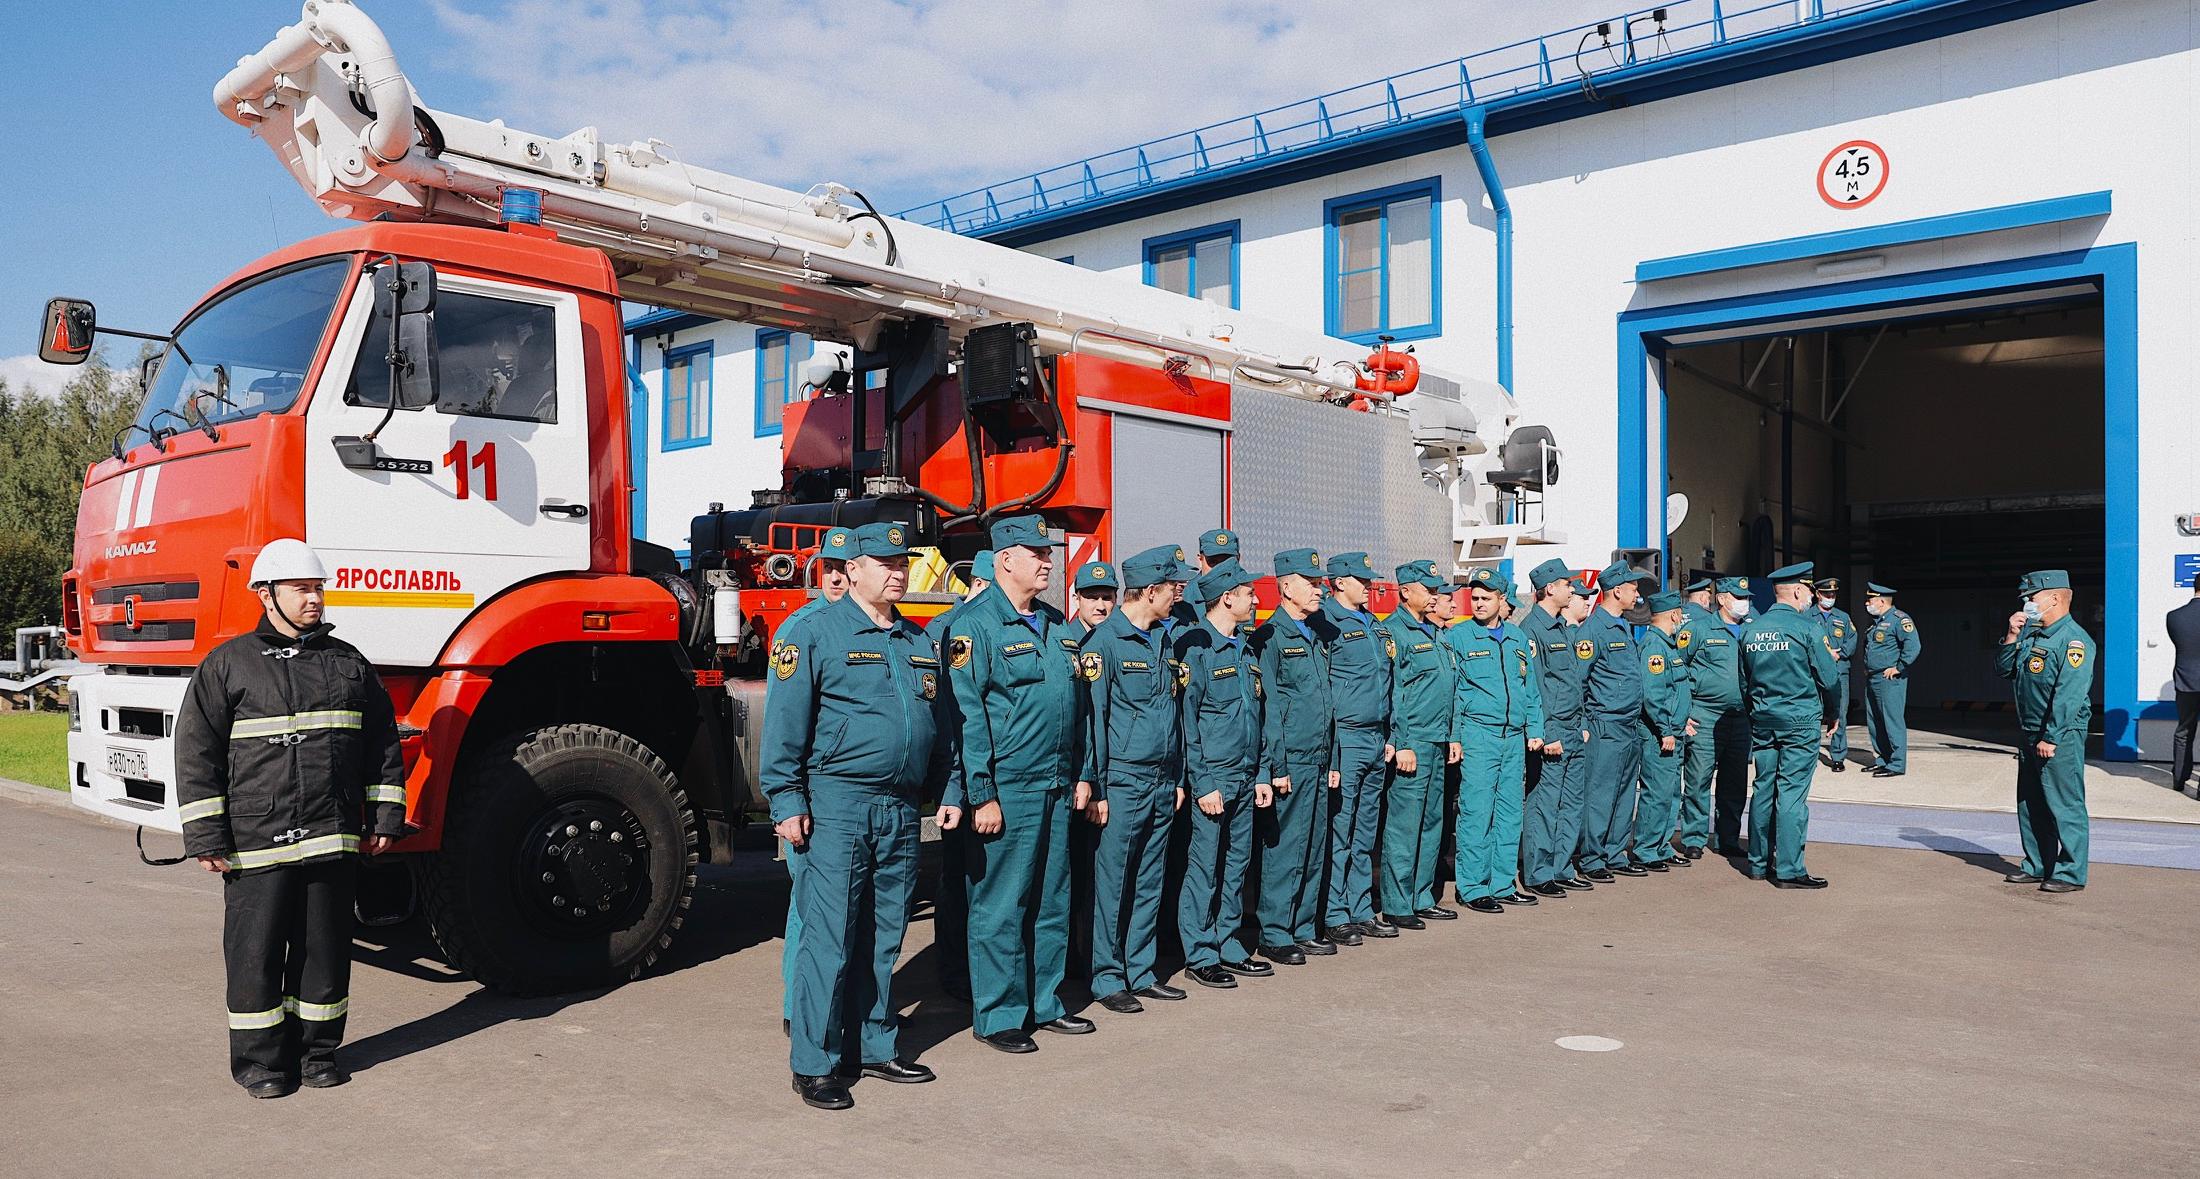 Новое депо в Ярославской области для пожарных в пользование от ООО «Транснефть – Балтика»